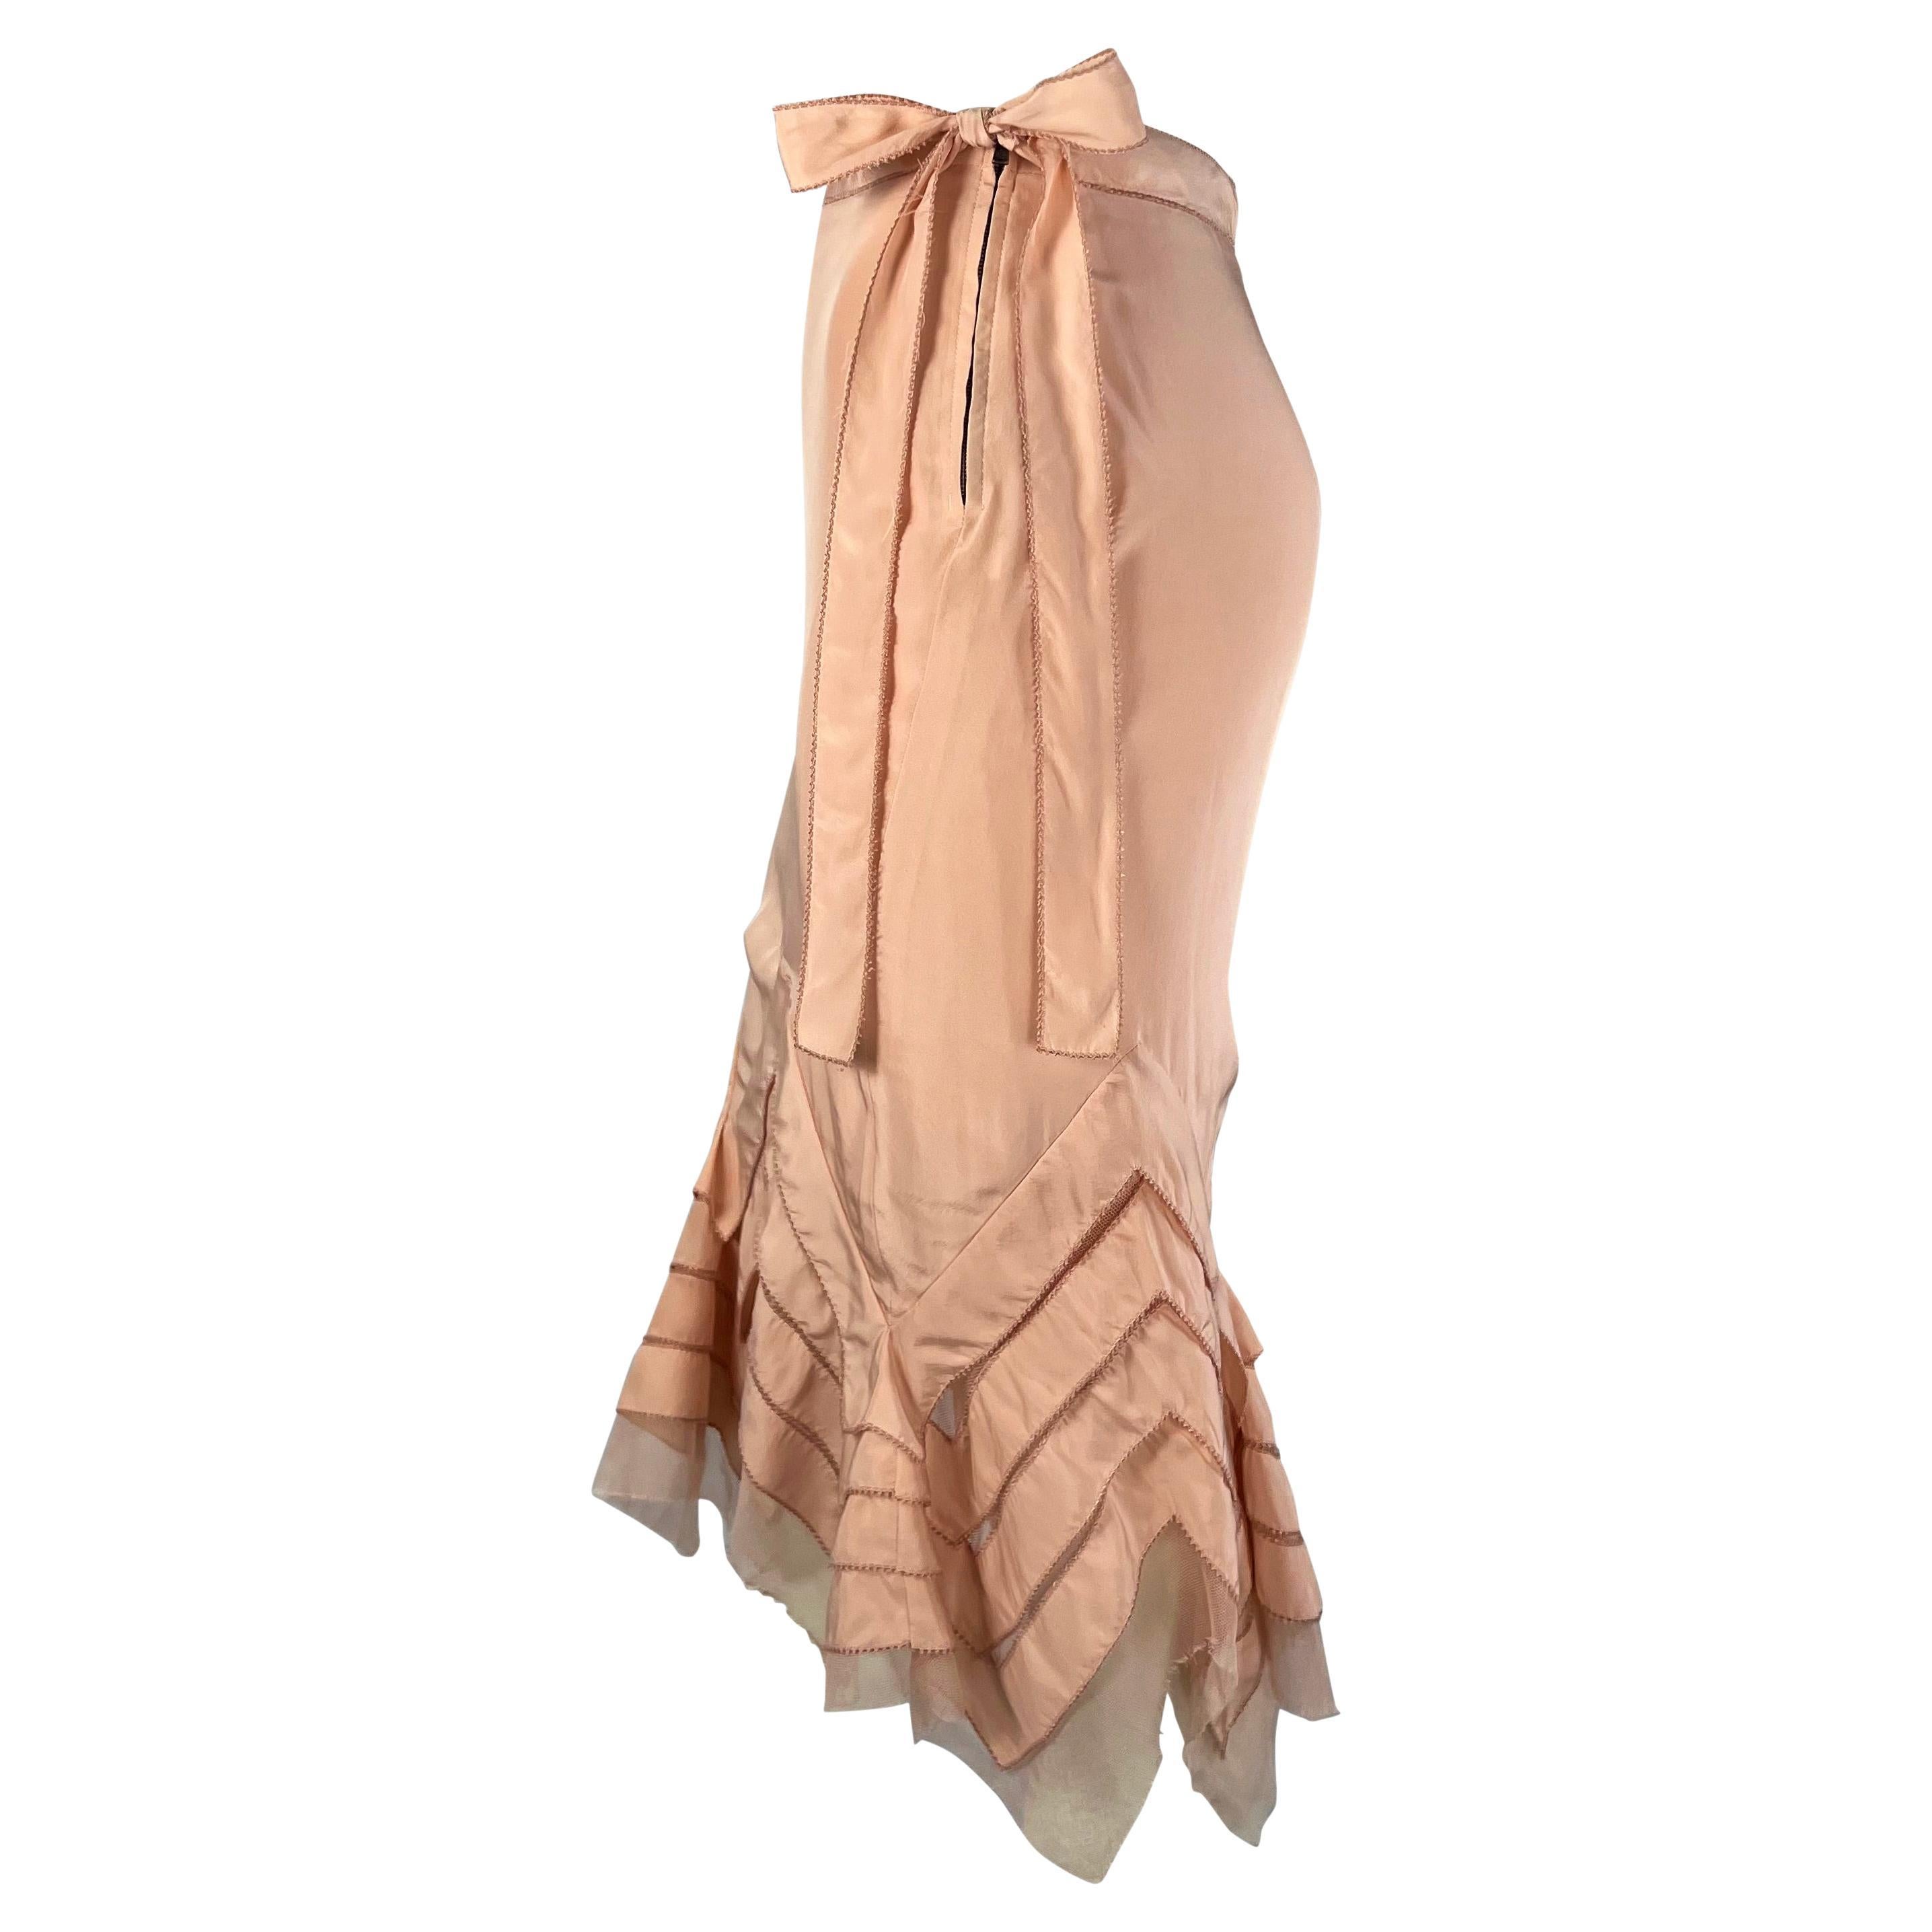 Collectional présente une rare jupe en satin de soie rose et ruban de tulle conçue par Tom Ford pour la collection printemps/été 2004 d'Yves Saint Laurent Rive Gauche. Cette pièce, qui fait partie de la dernière collection de printemps de Ford pour